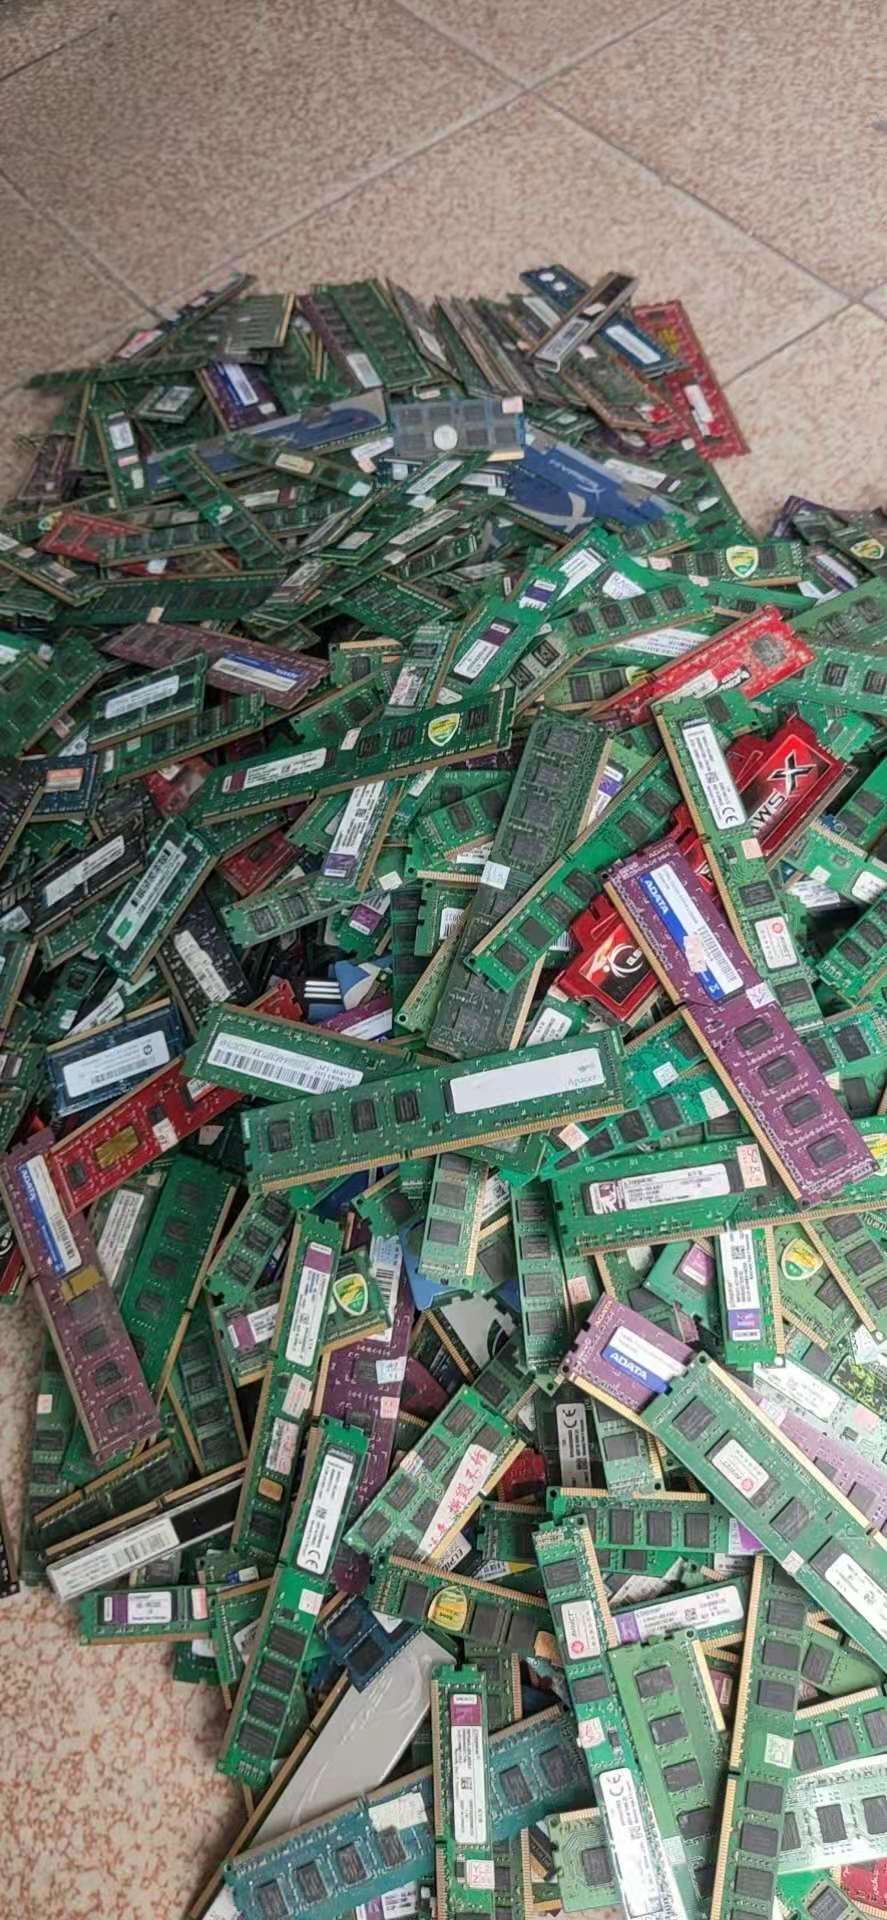 佛山市珠海回收网吧电子产品厂家珠海回收网吧电子产品 免费上门回收 回收热线